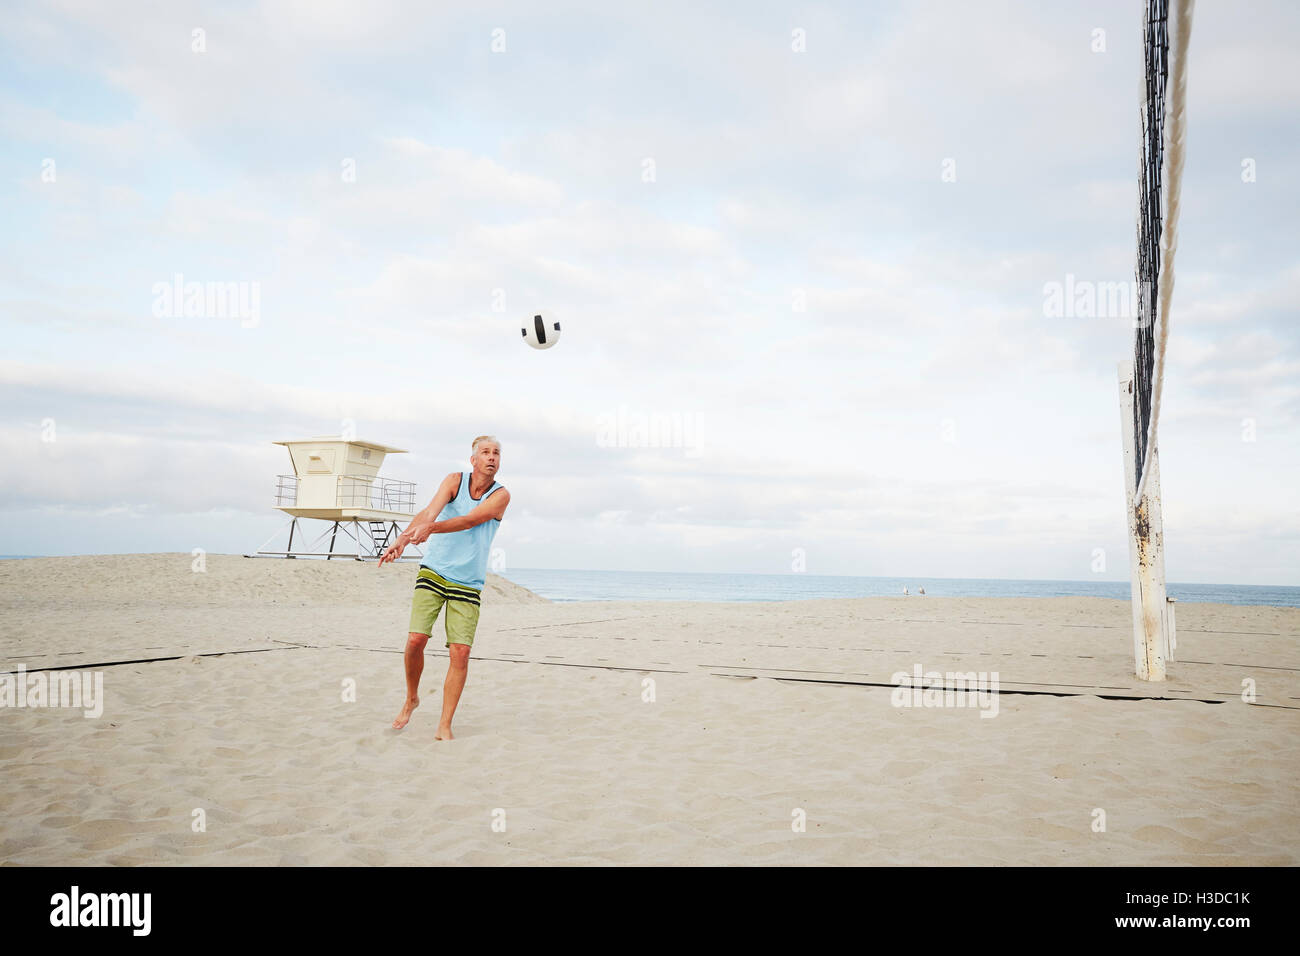 Reifer Mann stehend an einem Strand, Beach-Volleyball zu spielen. Stockfoto